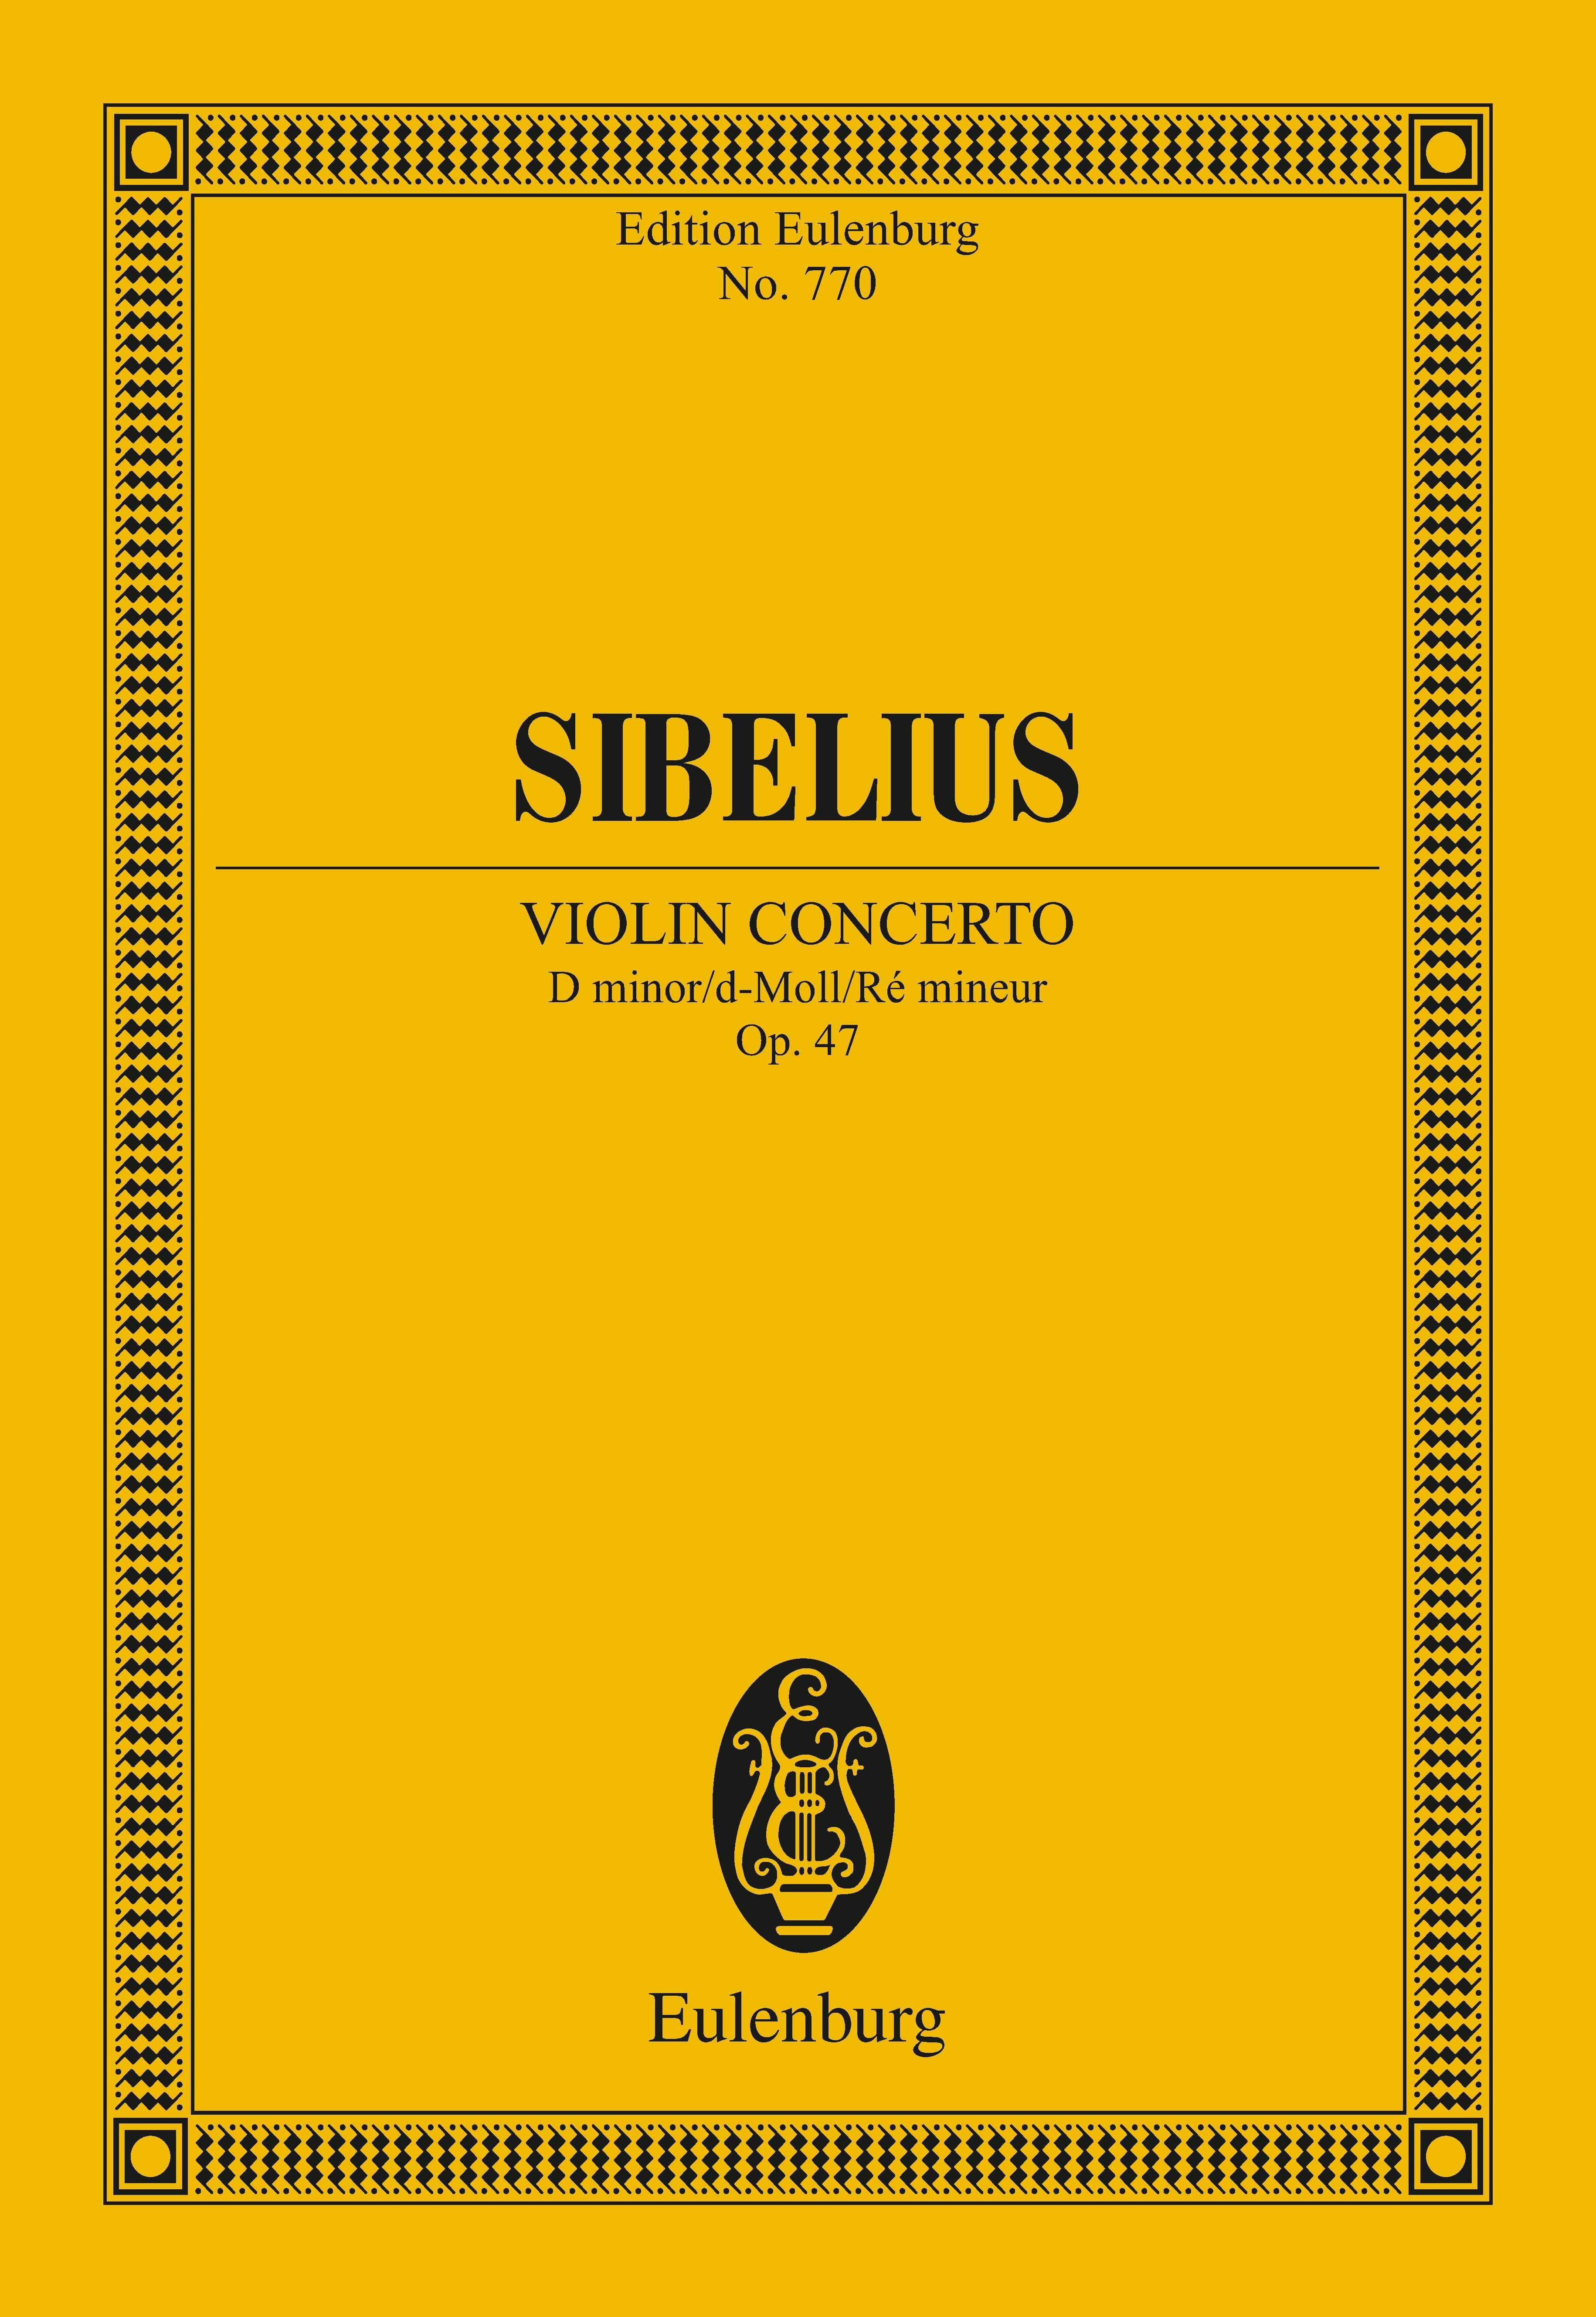 Violin Concerto D minor: Op. 47 - Jean Sibelius